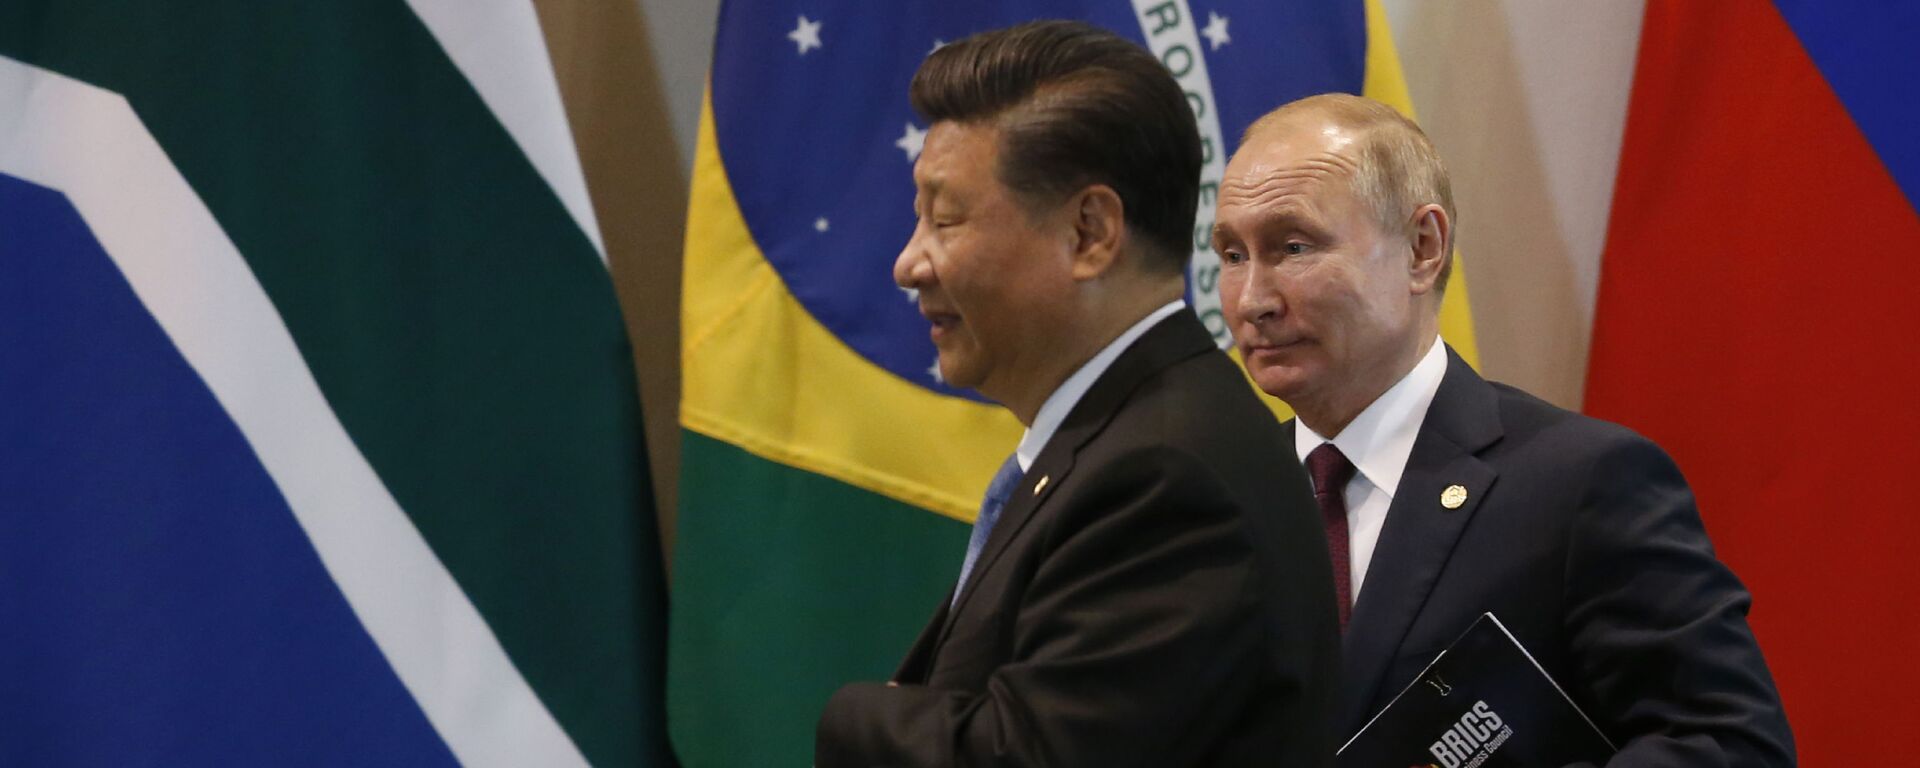 Presidentes da China, Xi Jinping (à esquerda), e da Rússia, Vladimir Putin, durante encontro do BRICS no Itamaraty. Brasília, Brasil, 14 de novembro de 2019 (foto de arquivo) - Sputnik Brasil, 1920, 26.12.2022